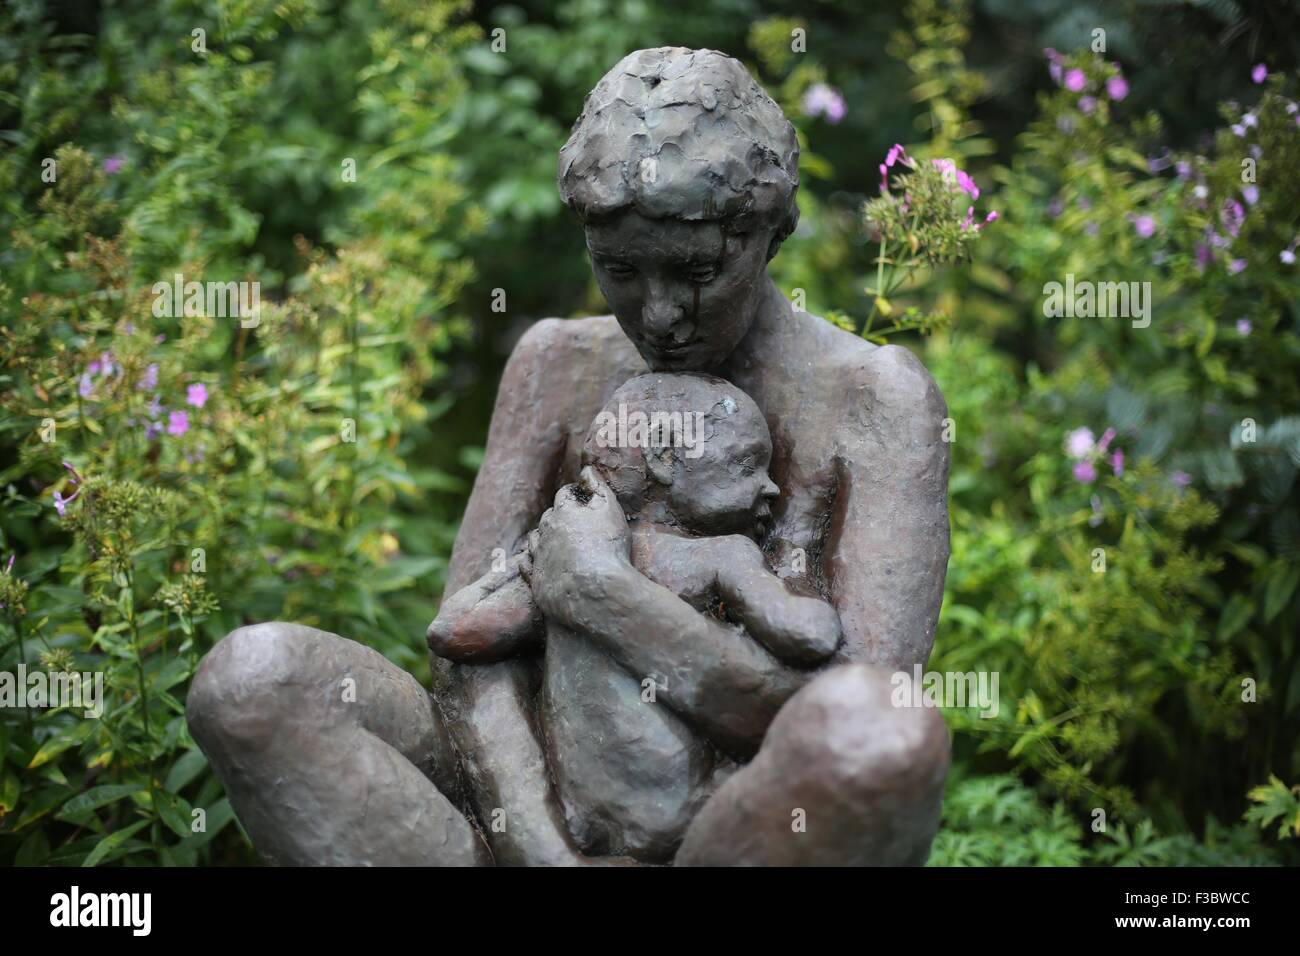 Une statue d'une mère et l'enfant par Michael Price au Minnesota Landscape Arboretum. Banque D'Images